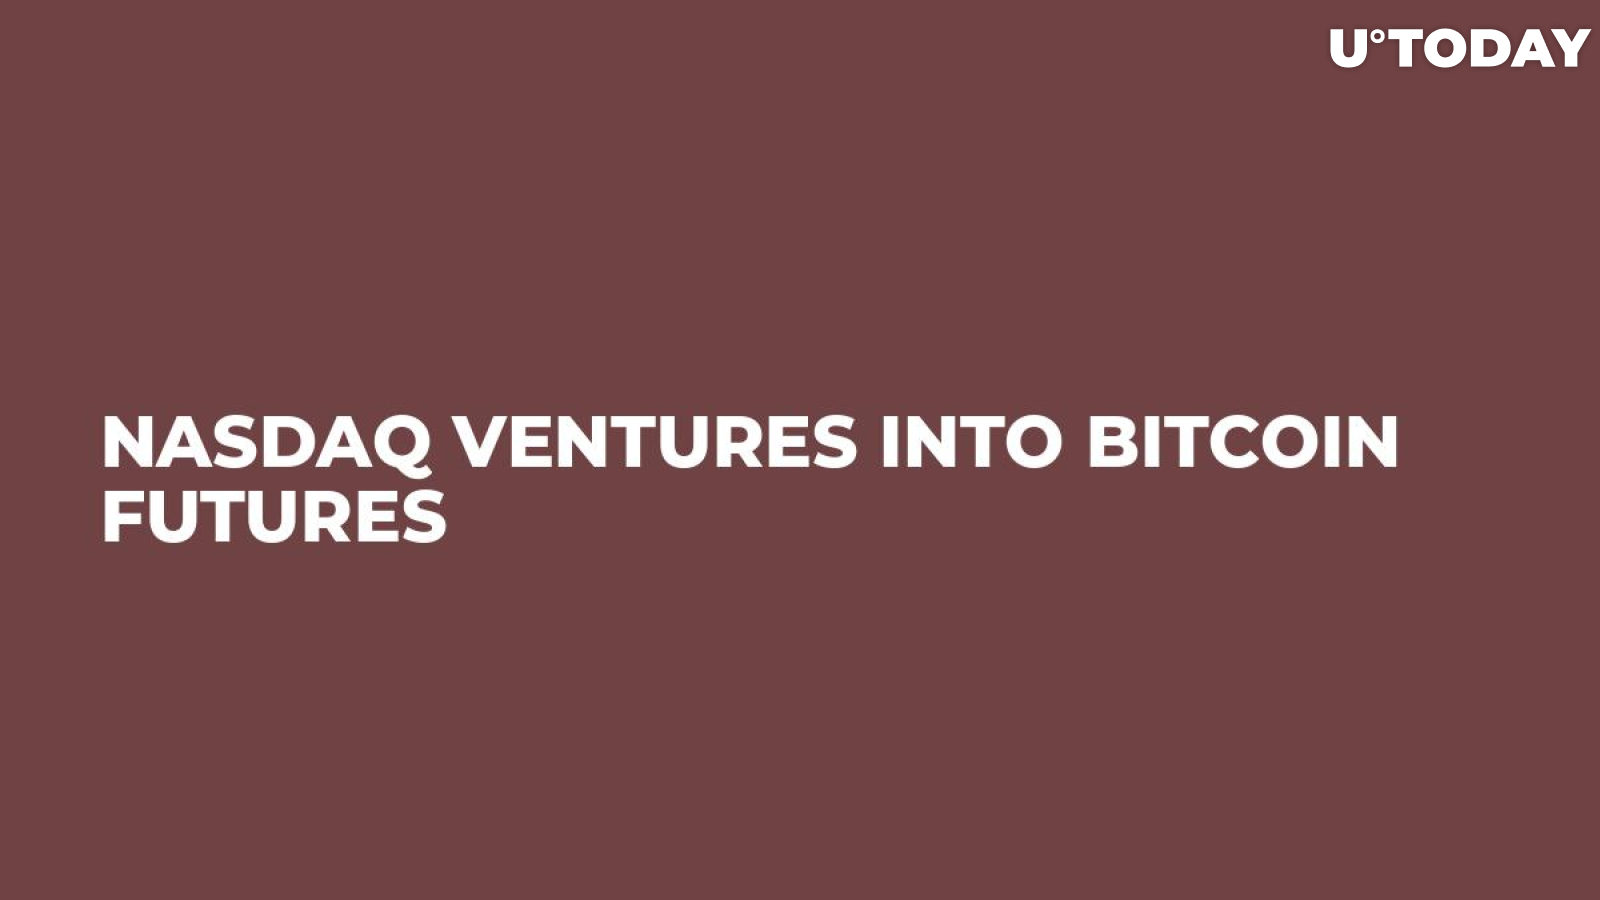 Nasdaq Ventures into Bitcoin Futures